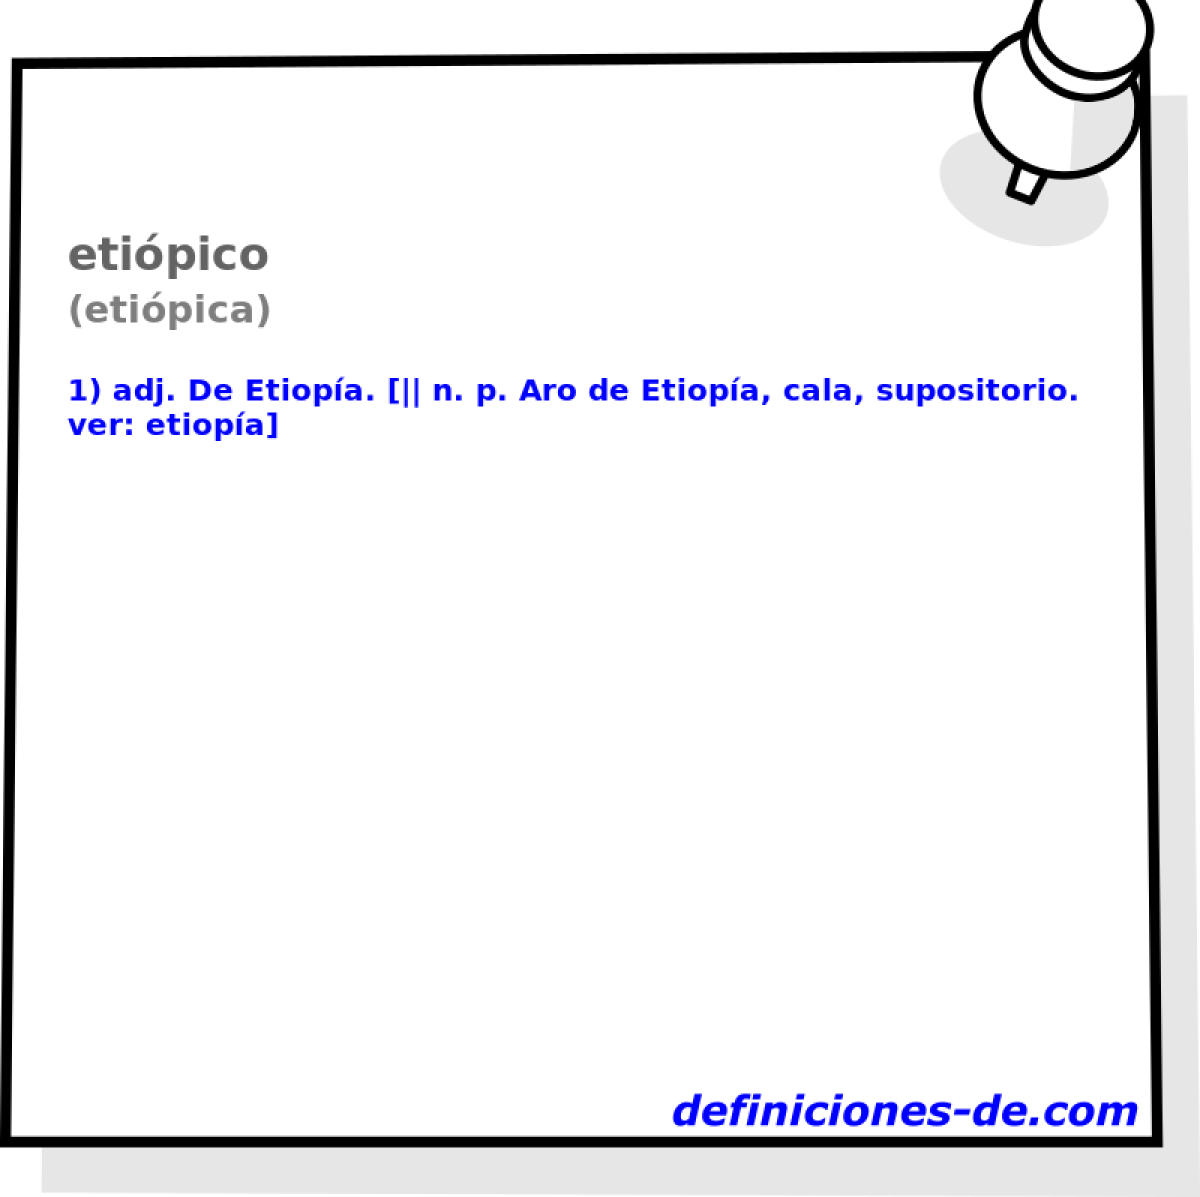 etipico (etipica)